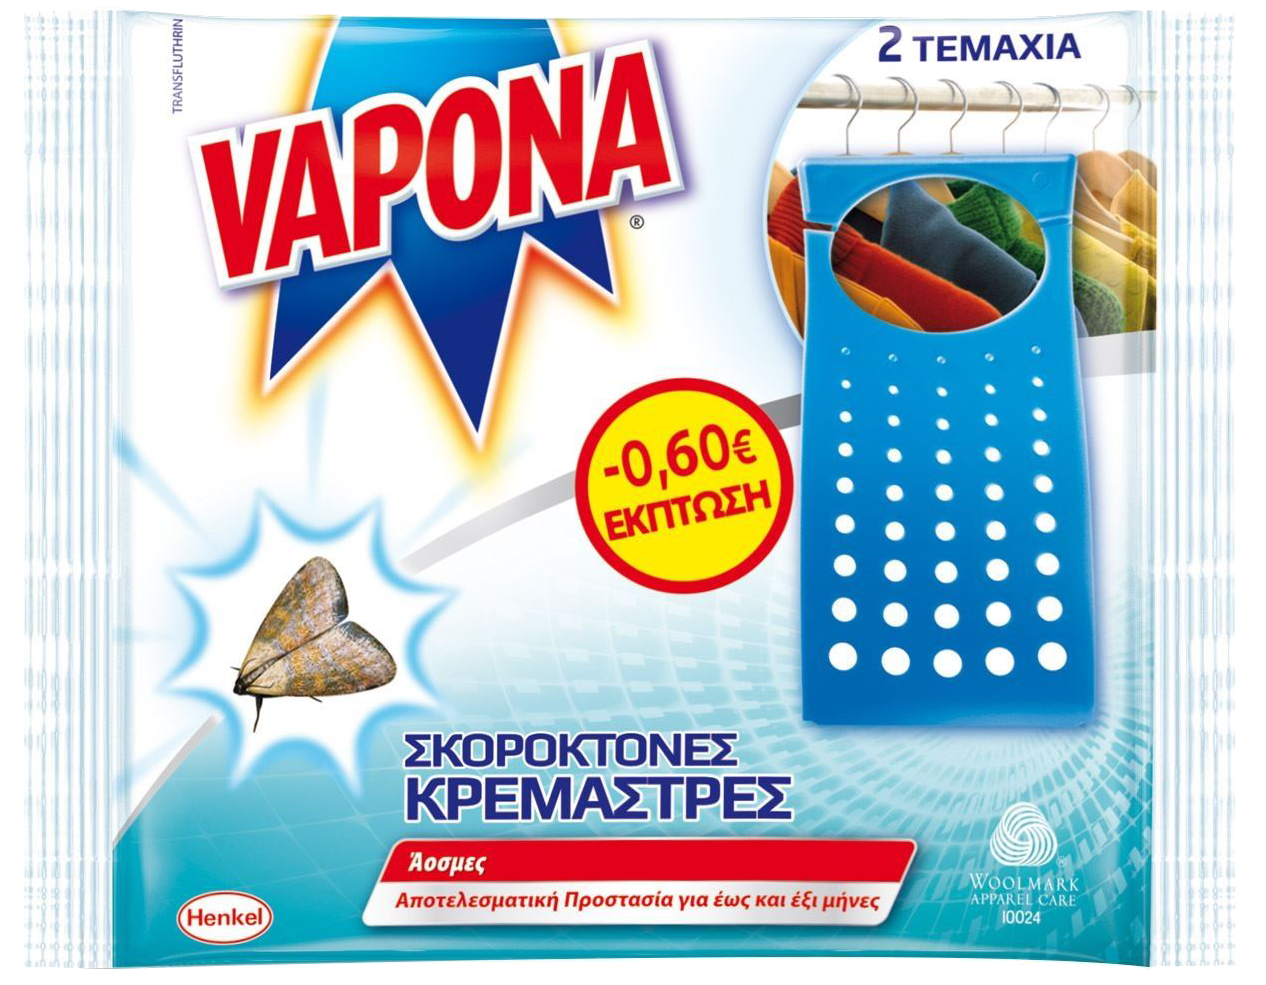 Σκοροκτόνα Vapona για Κρεμάστρες Μini Extra  2τμχ Sticker -0,60€